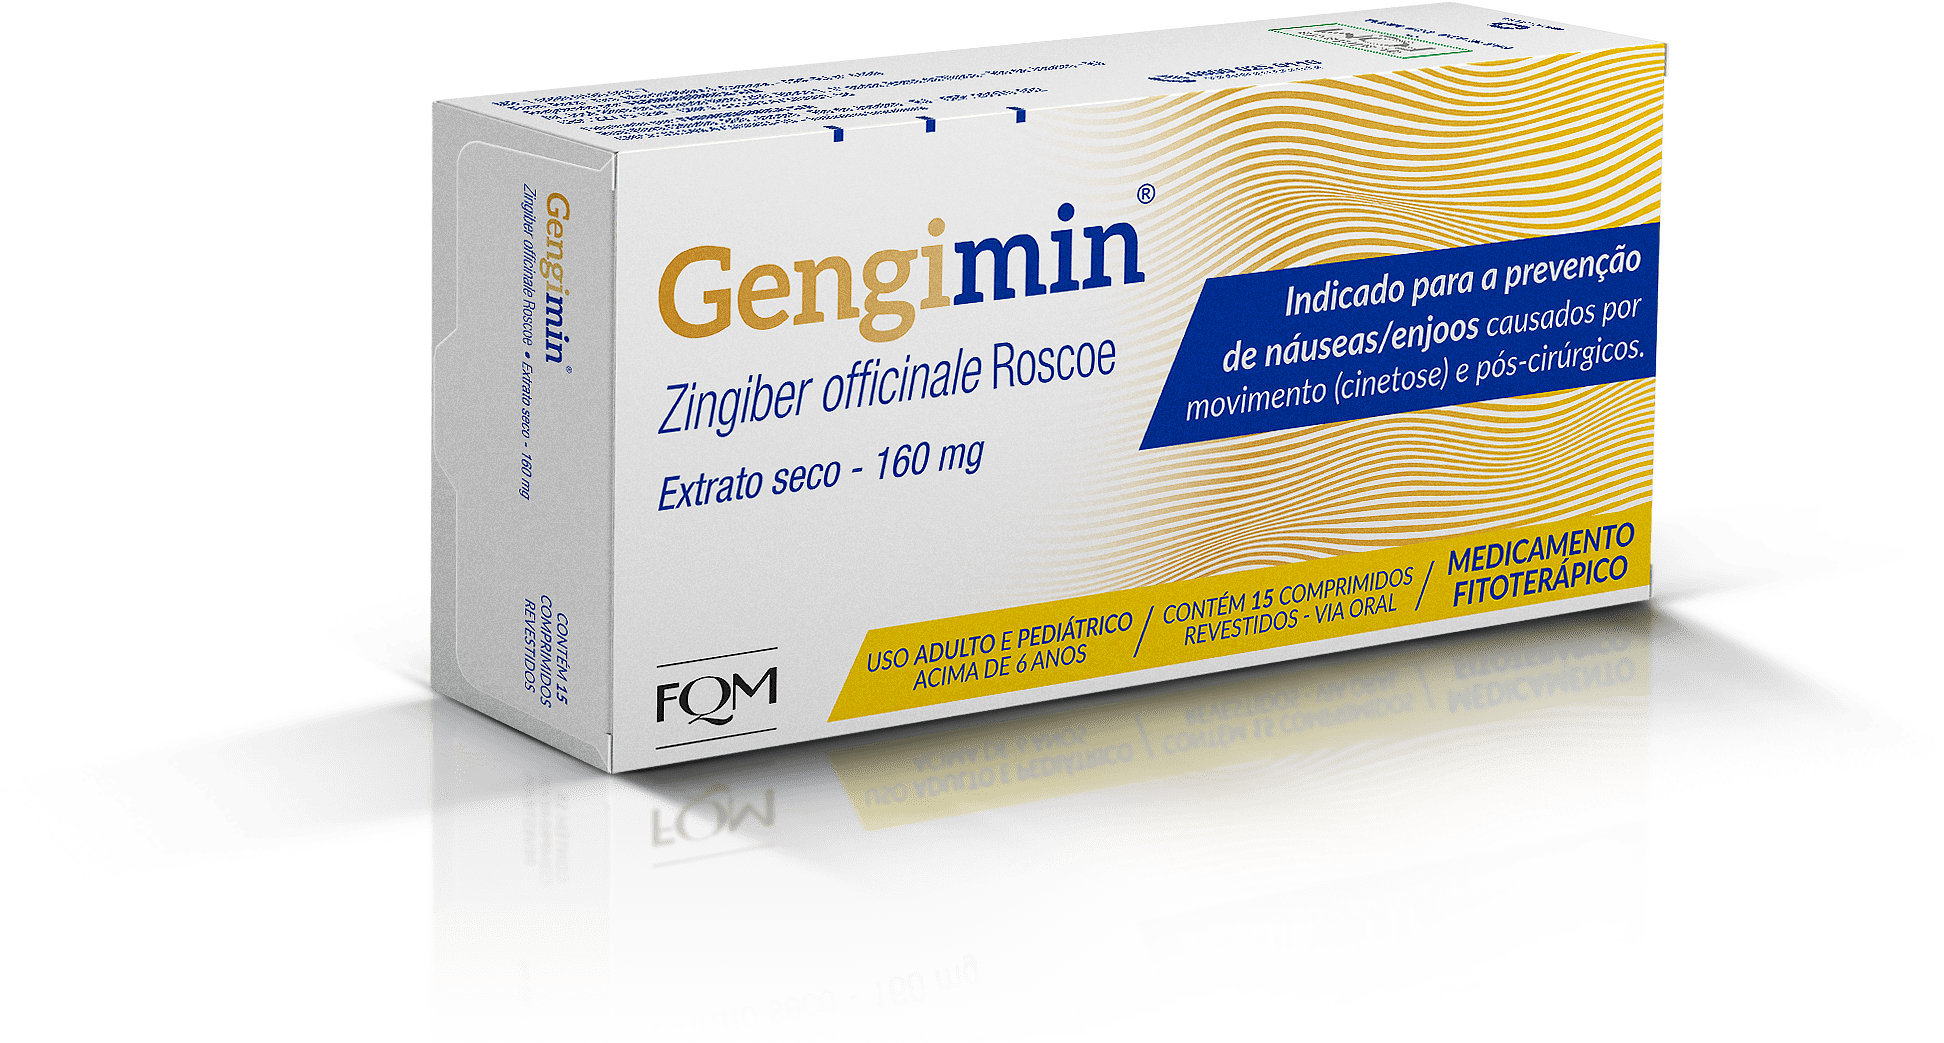 Gengimin: Enjoos podem ser aliviados com medicamento natural à base de gengibre